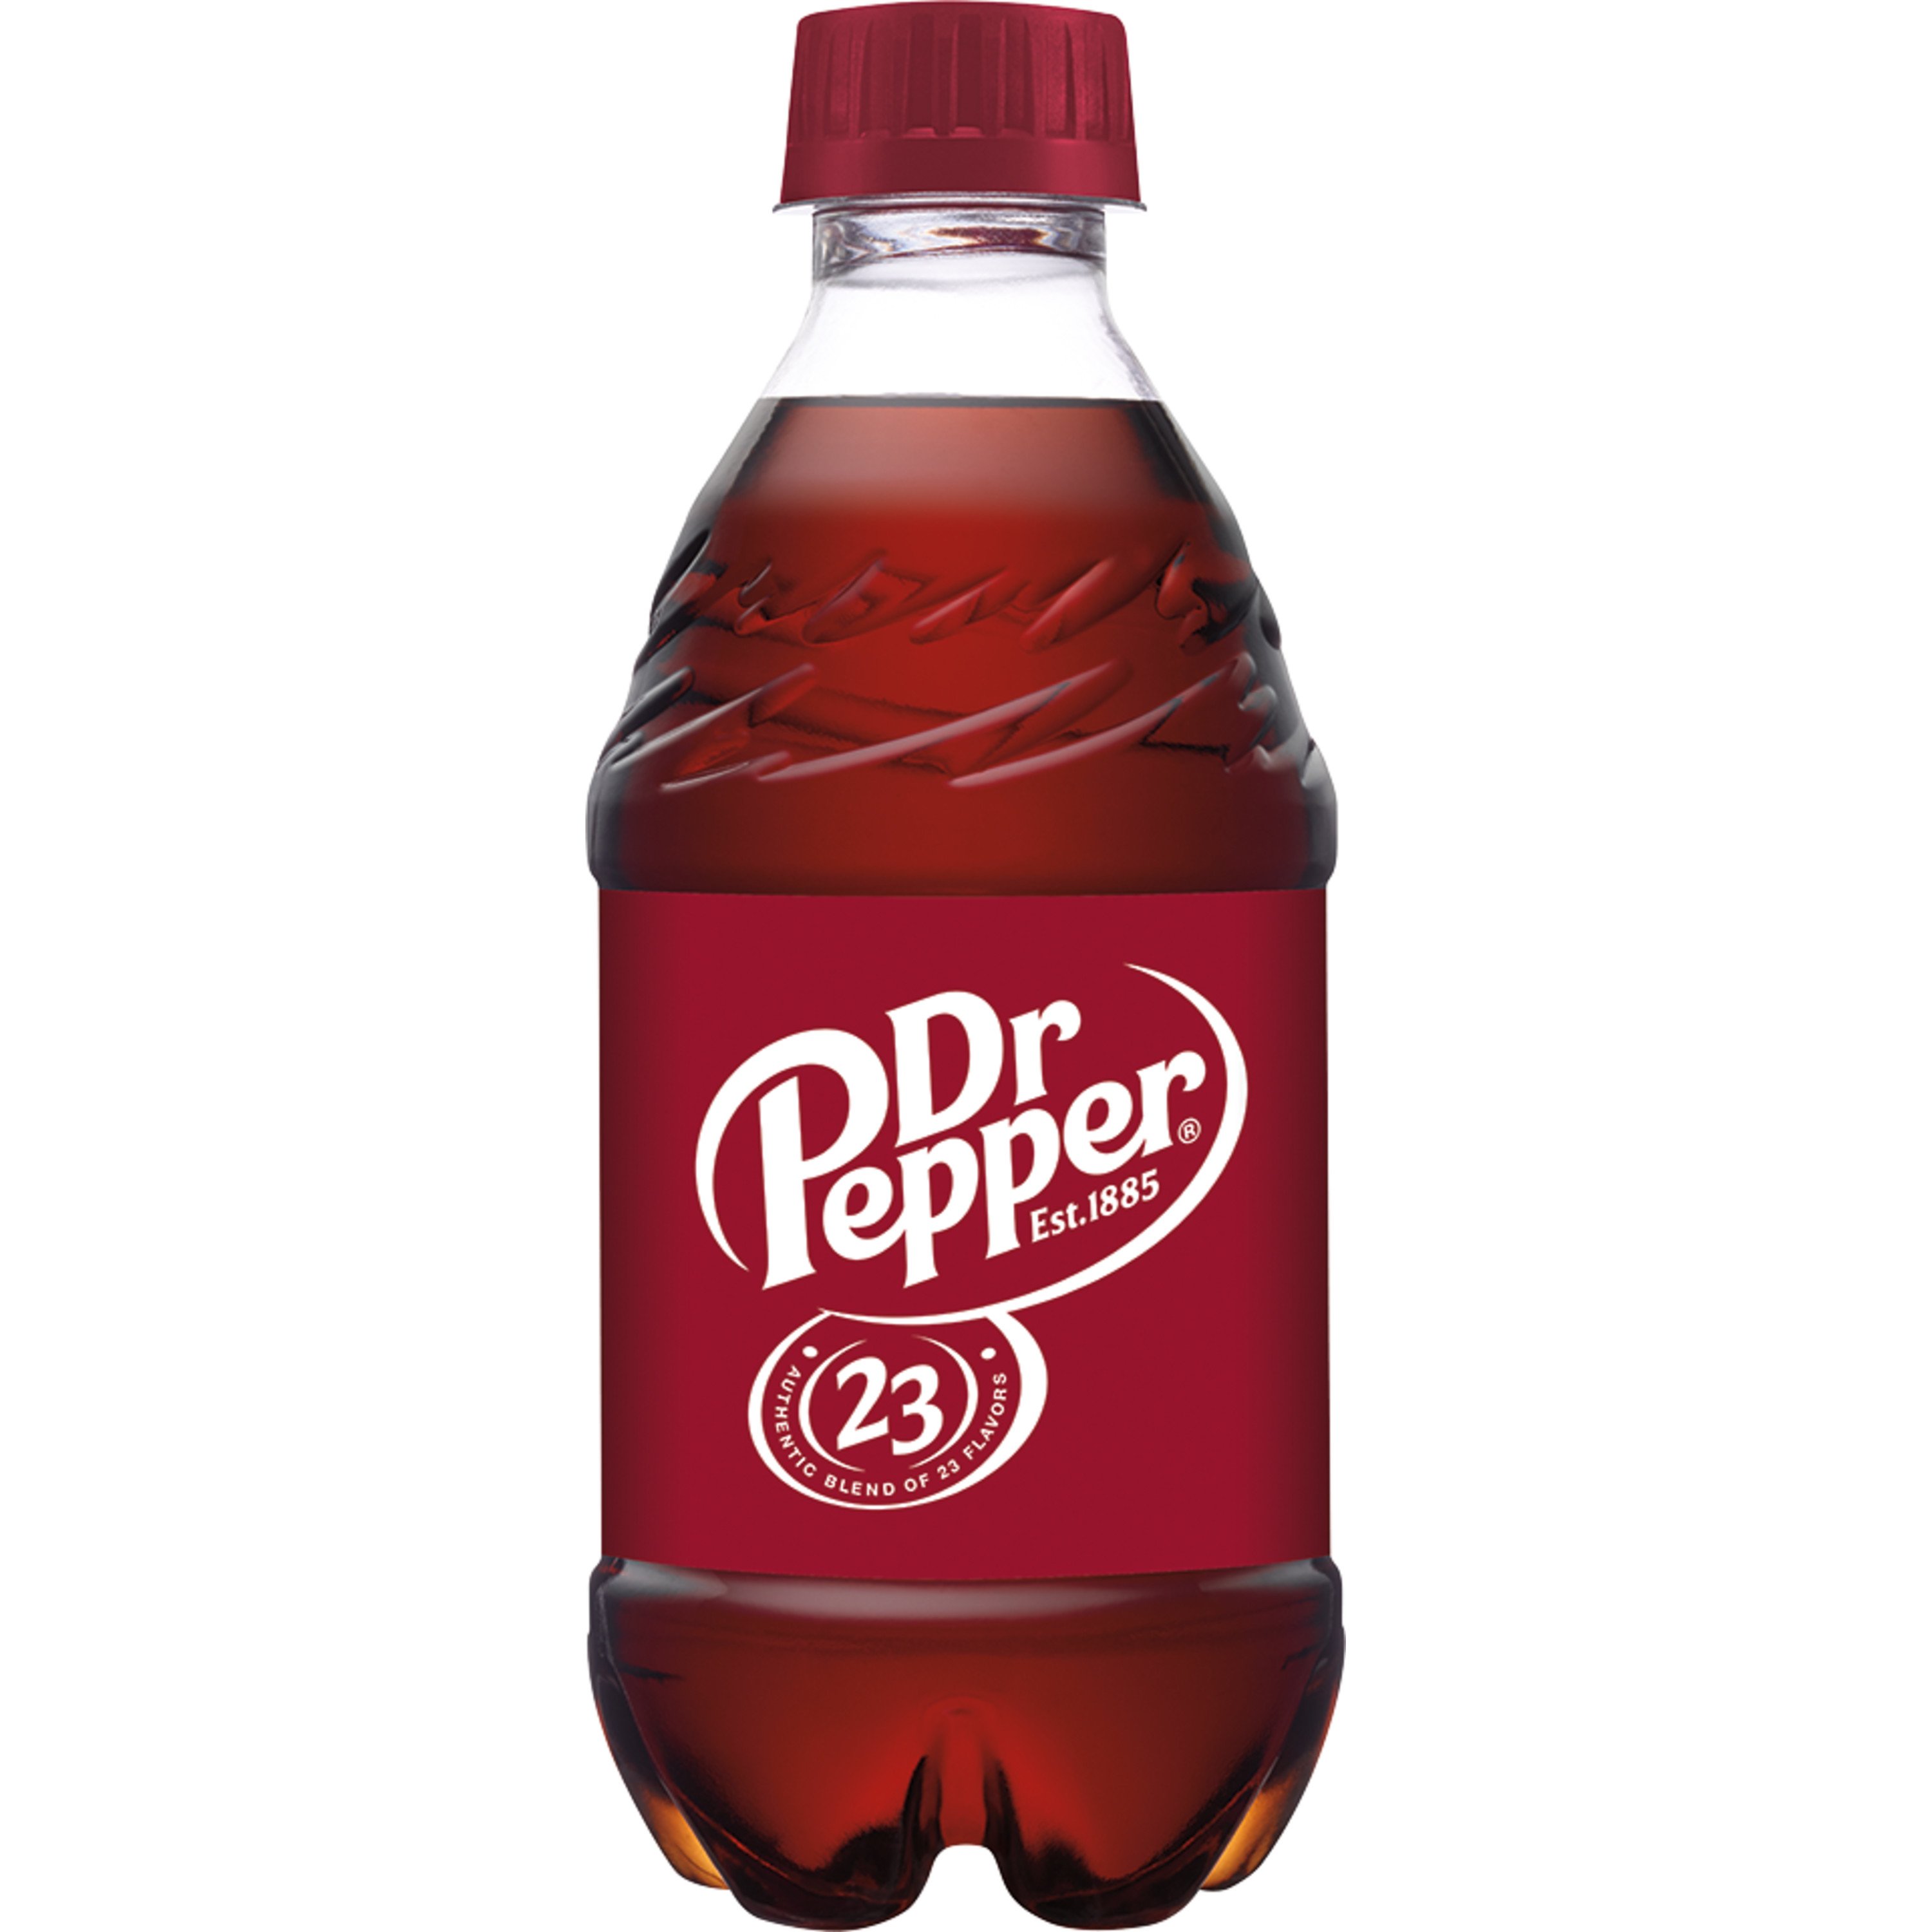 Chubby Bottle, 3-Pack / Pepper